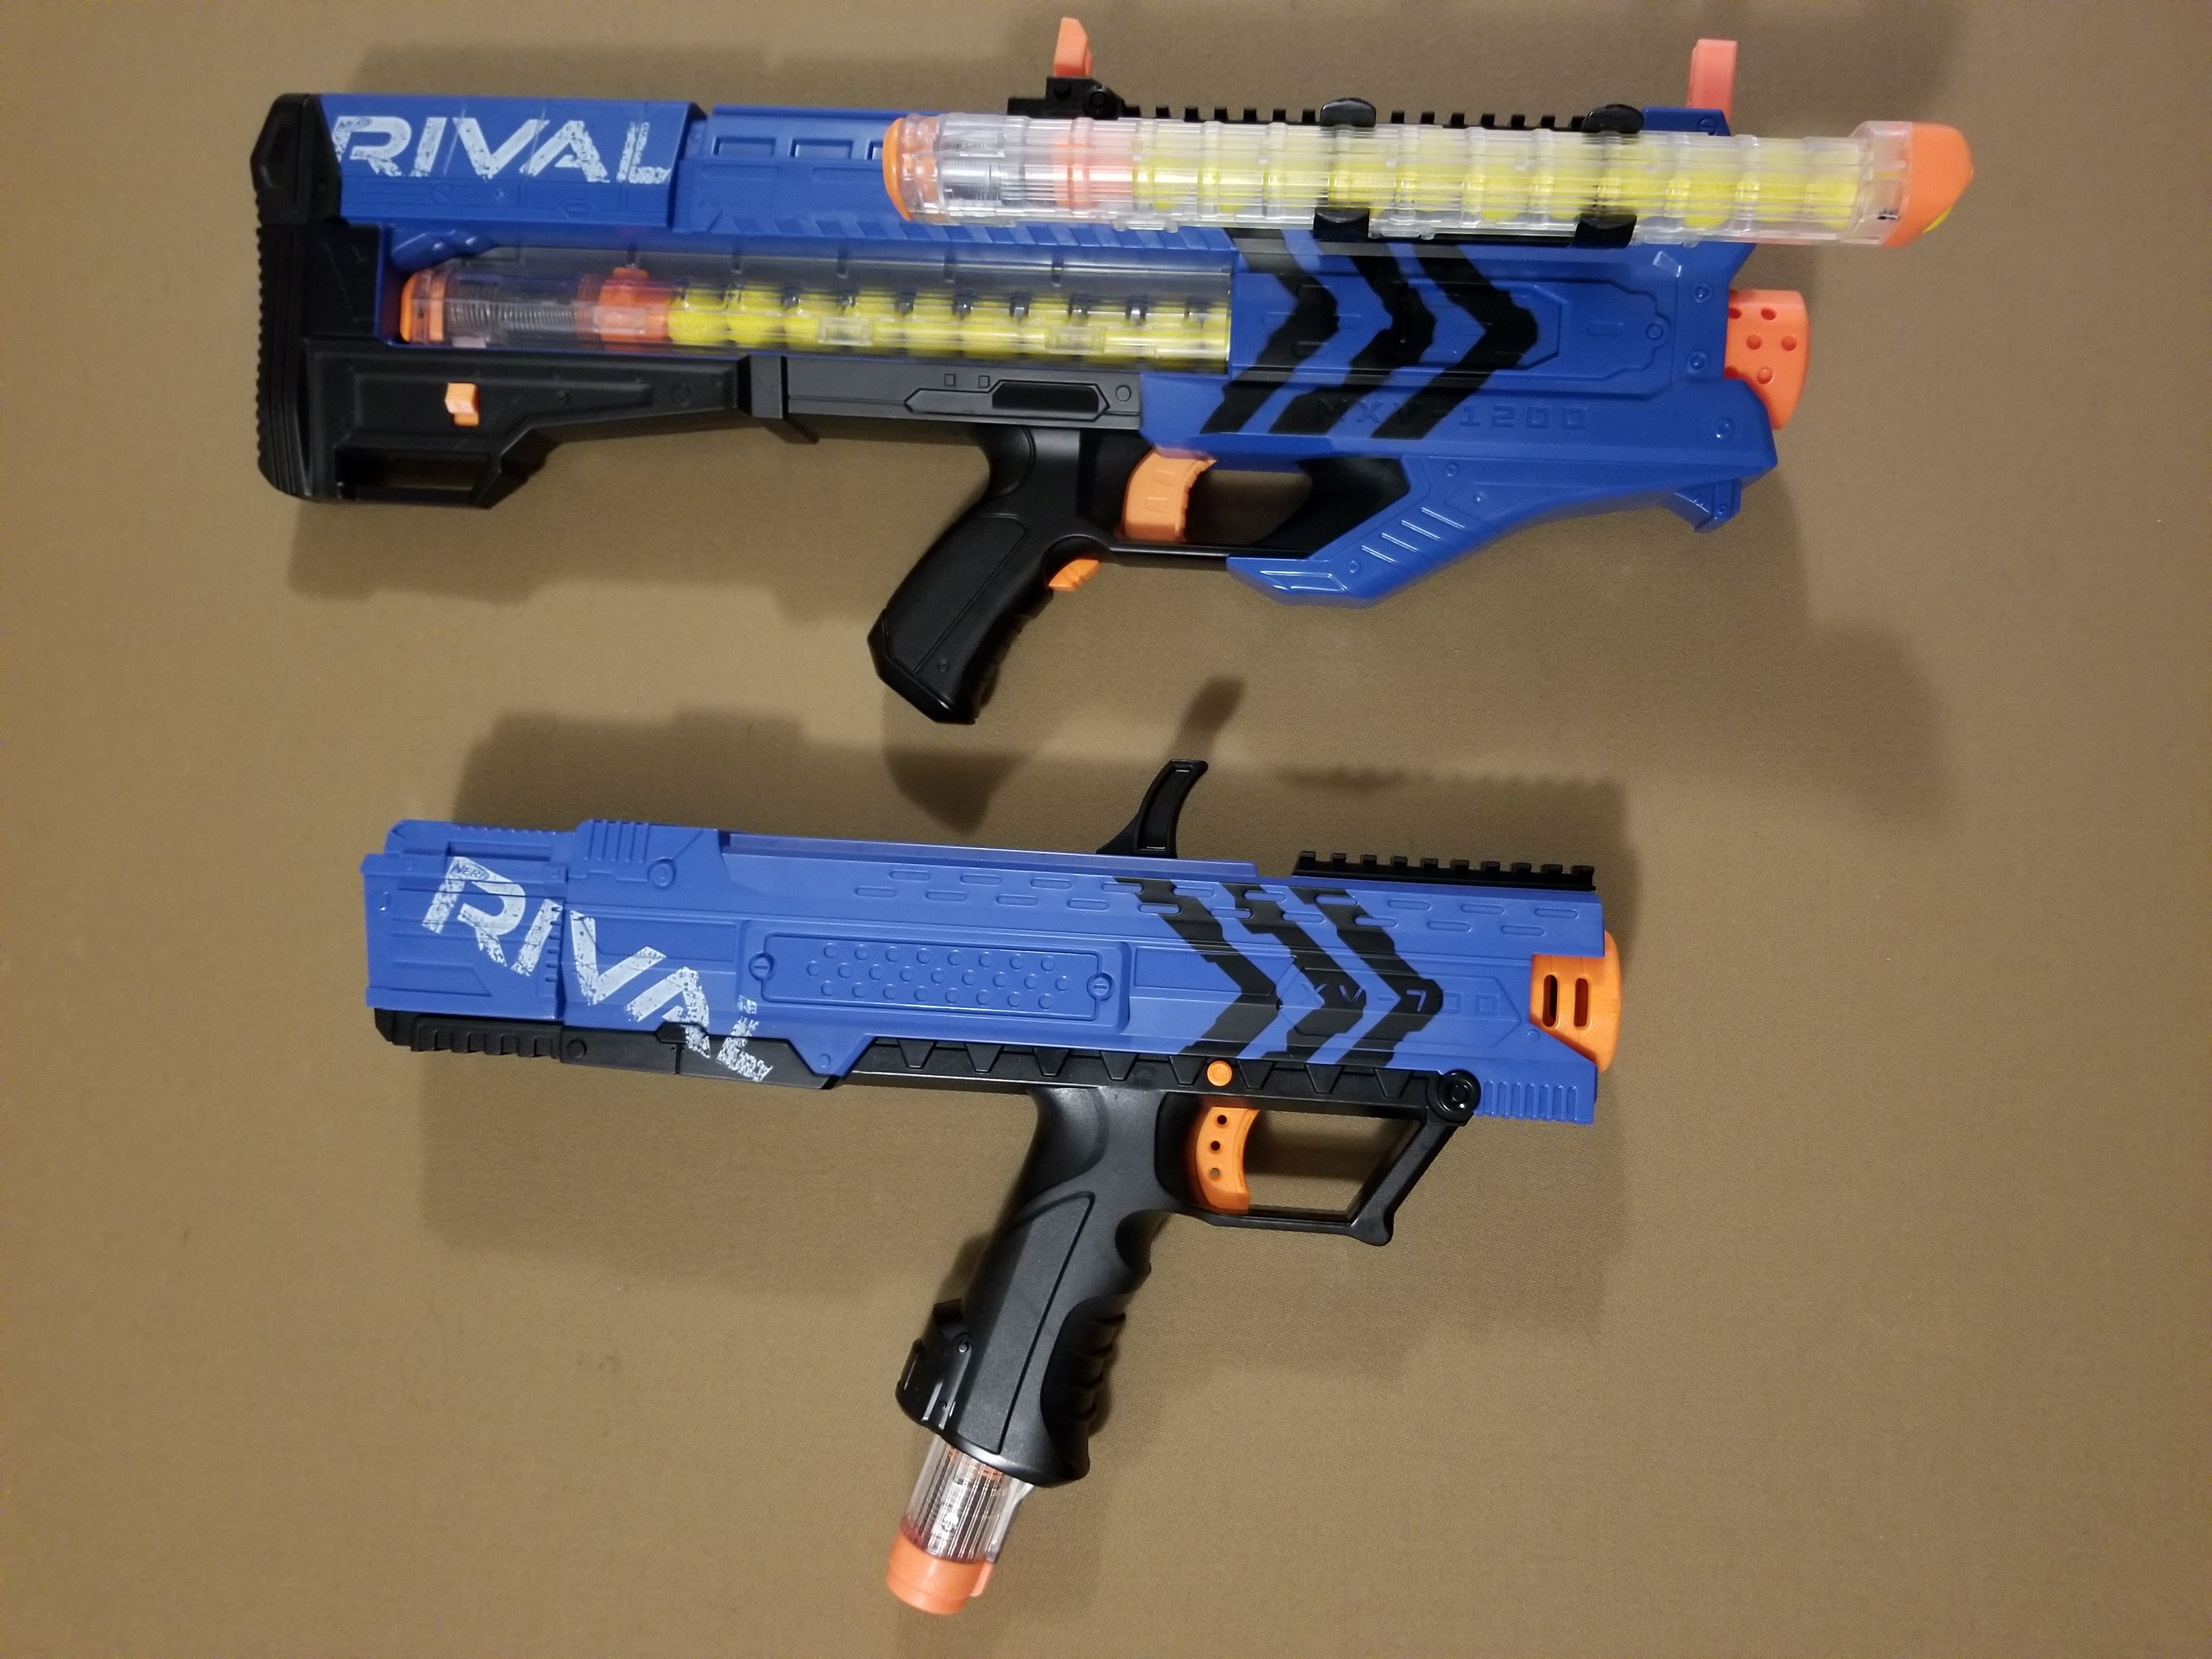 Nerf Rival guns XV-700 and MVX-1200